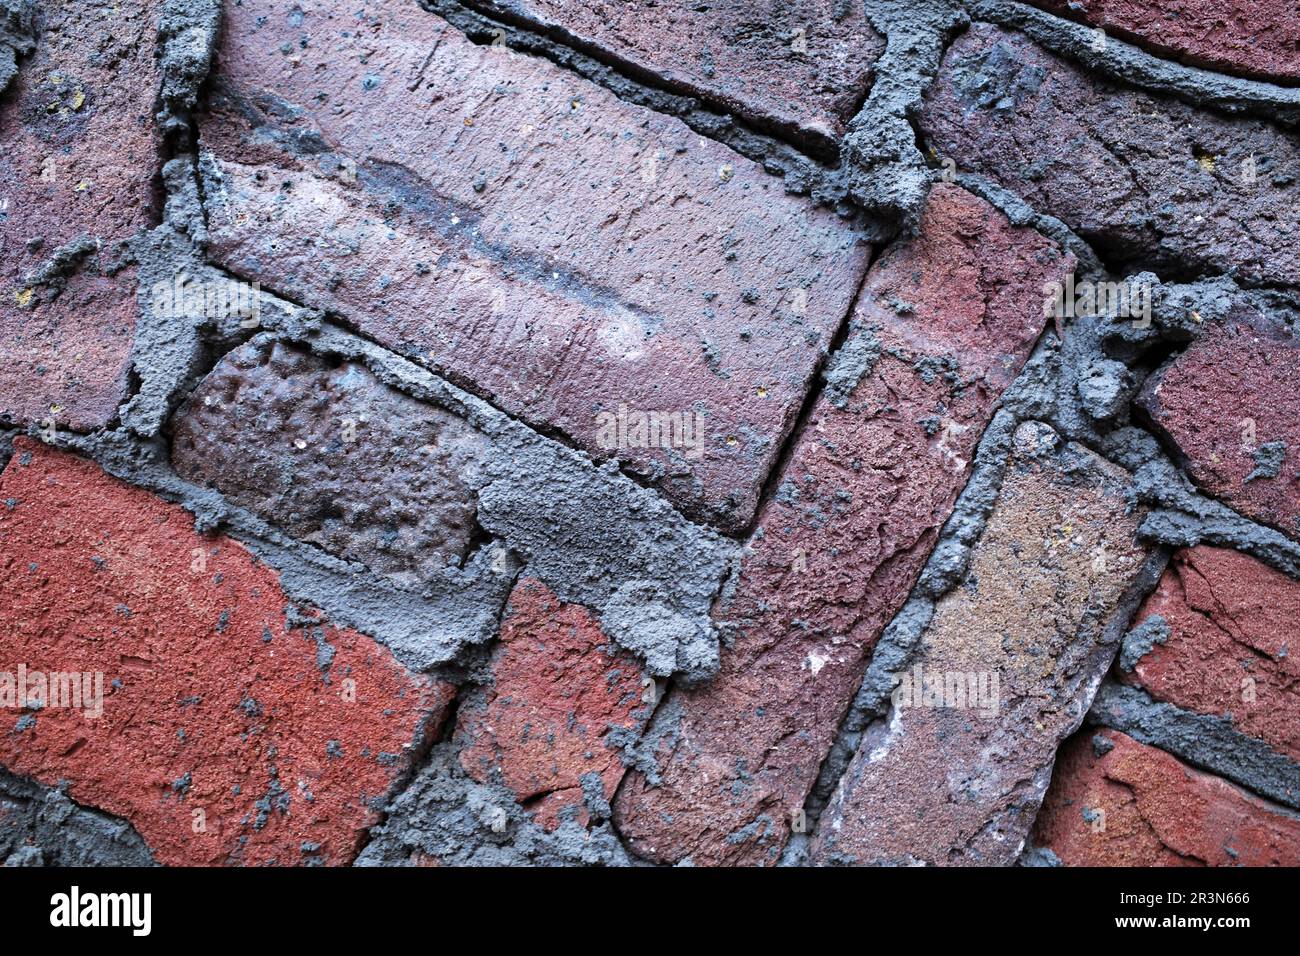 Eine moderne Mauer. Dunkelrote Ziegel sind kunstvoll verlegt und mit dunkelgrauem Zement verfugt. Stockfoto